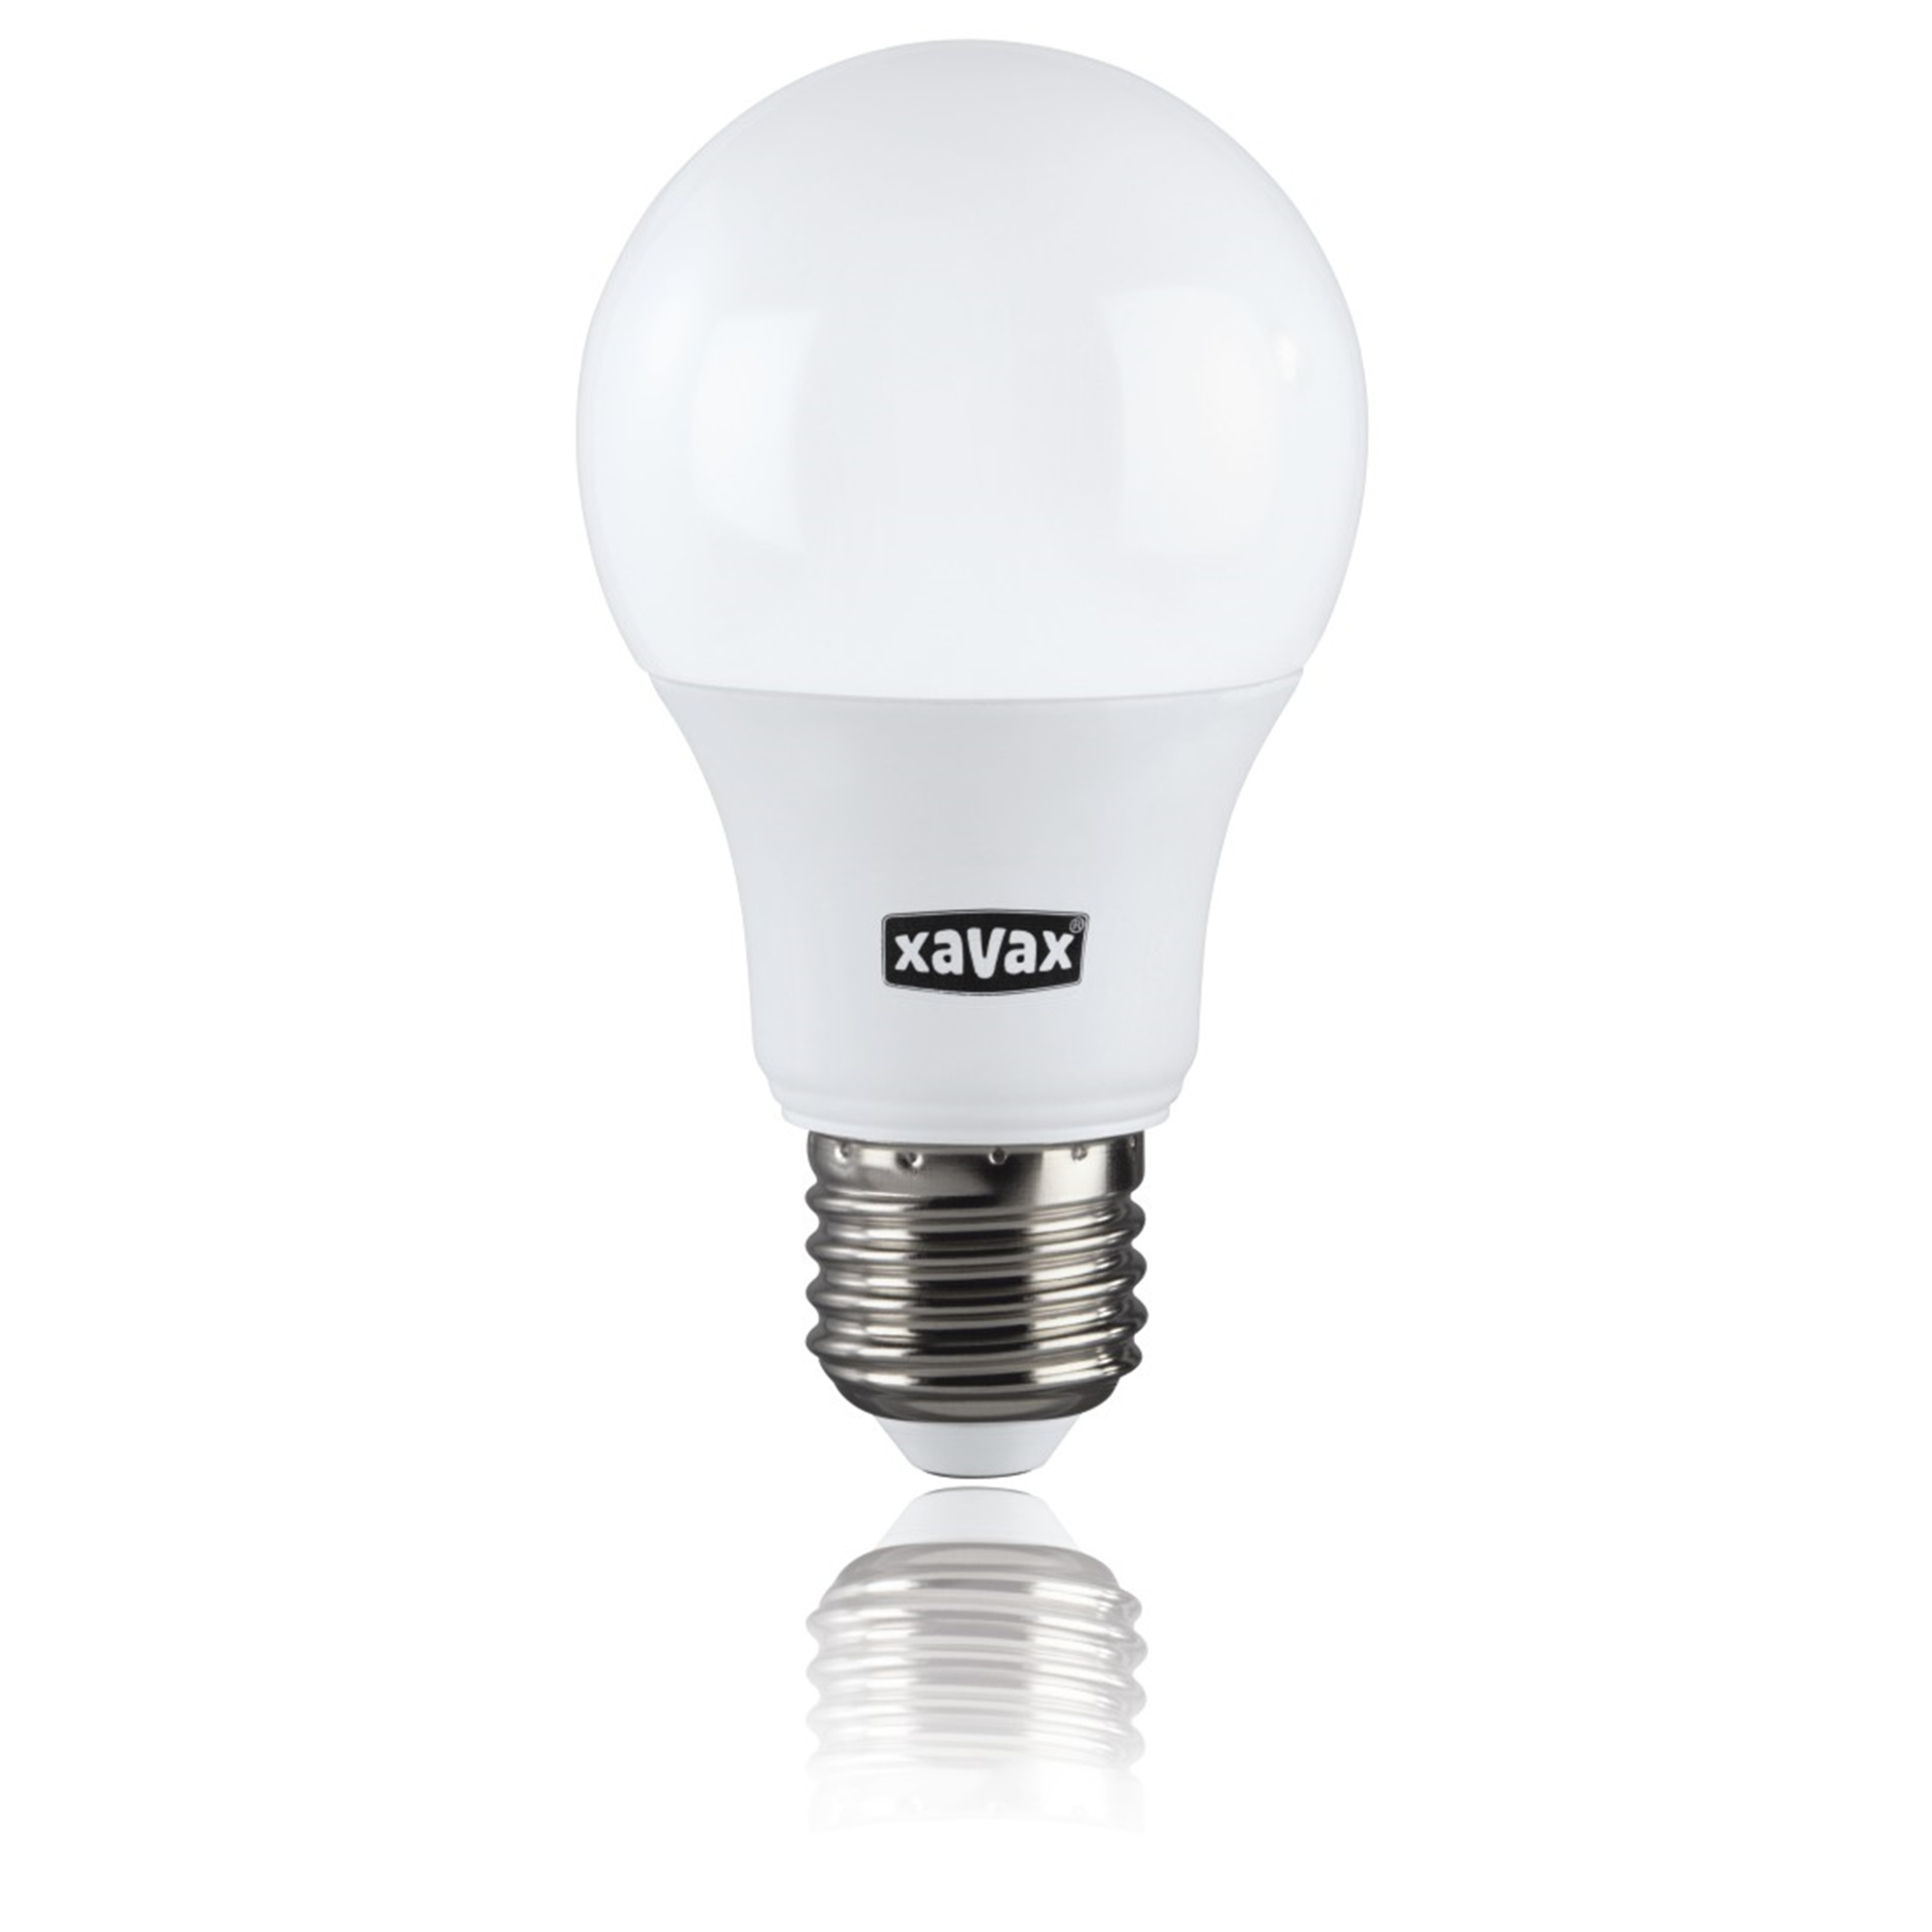 Warmweiß XAVAX 75W ersetzt E27, LED-Lampe E27 1055lm